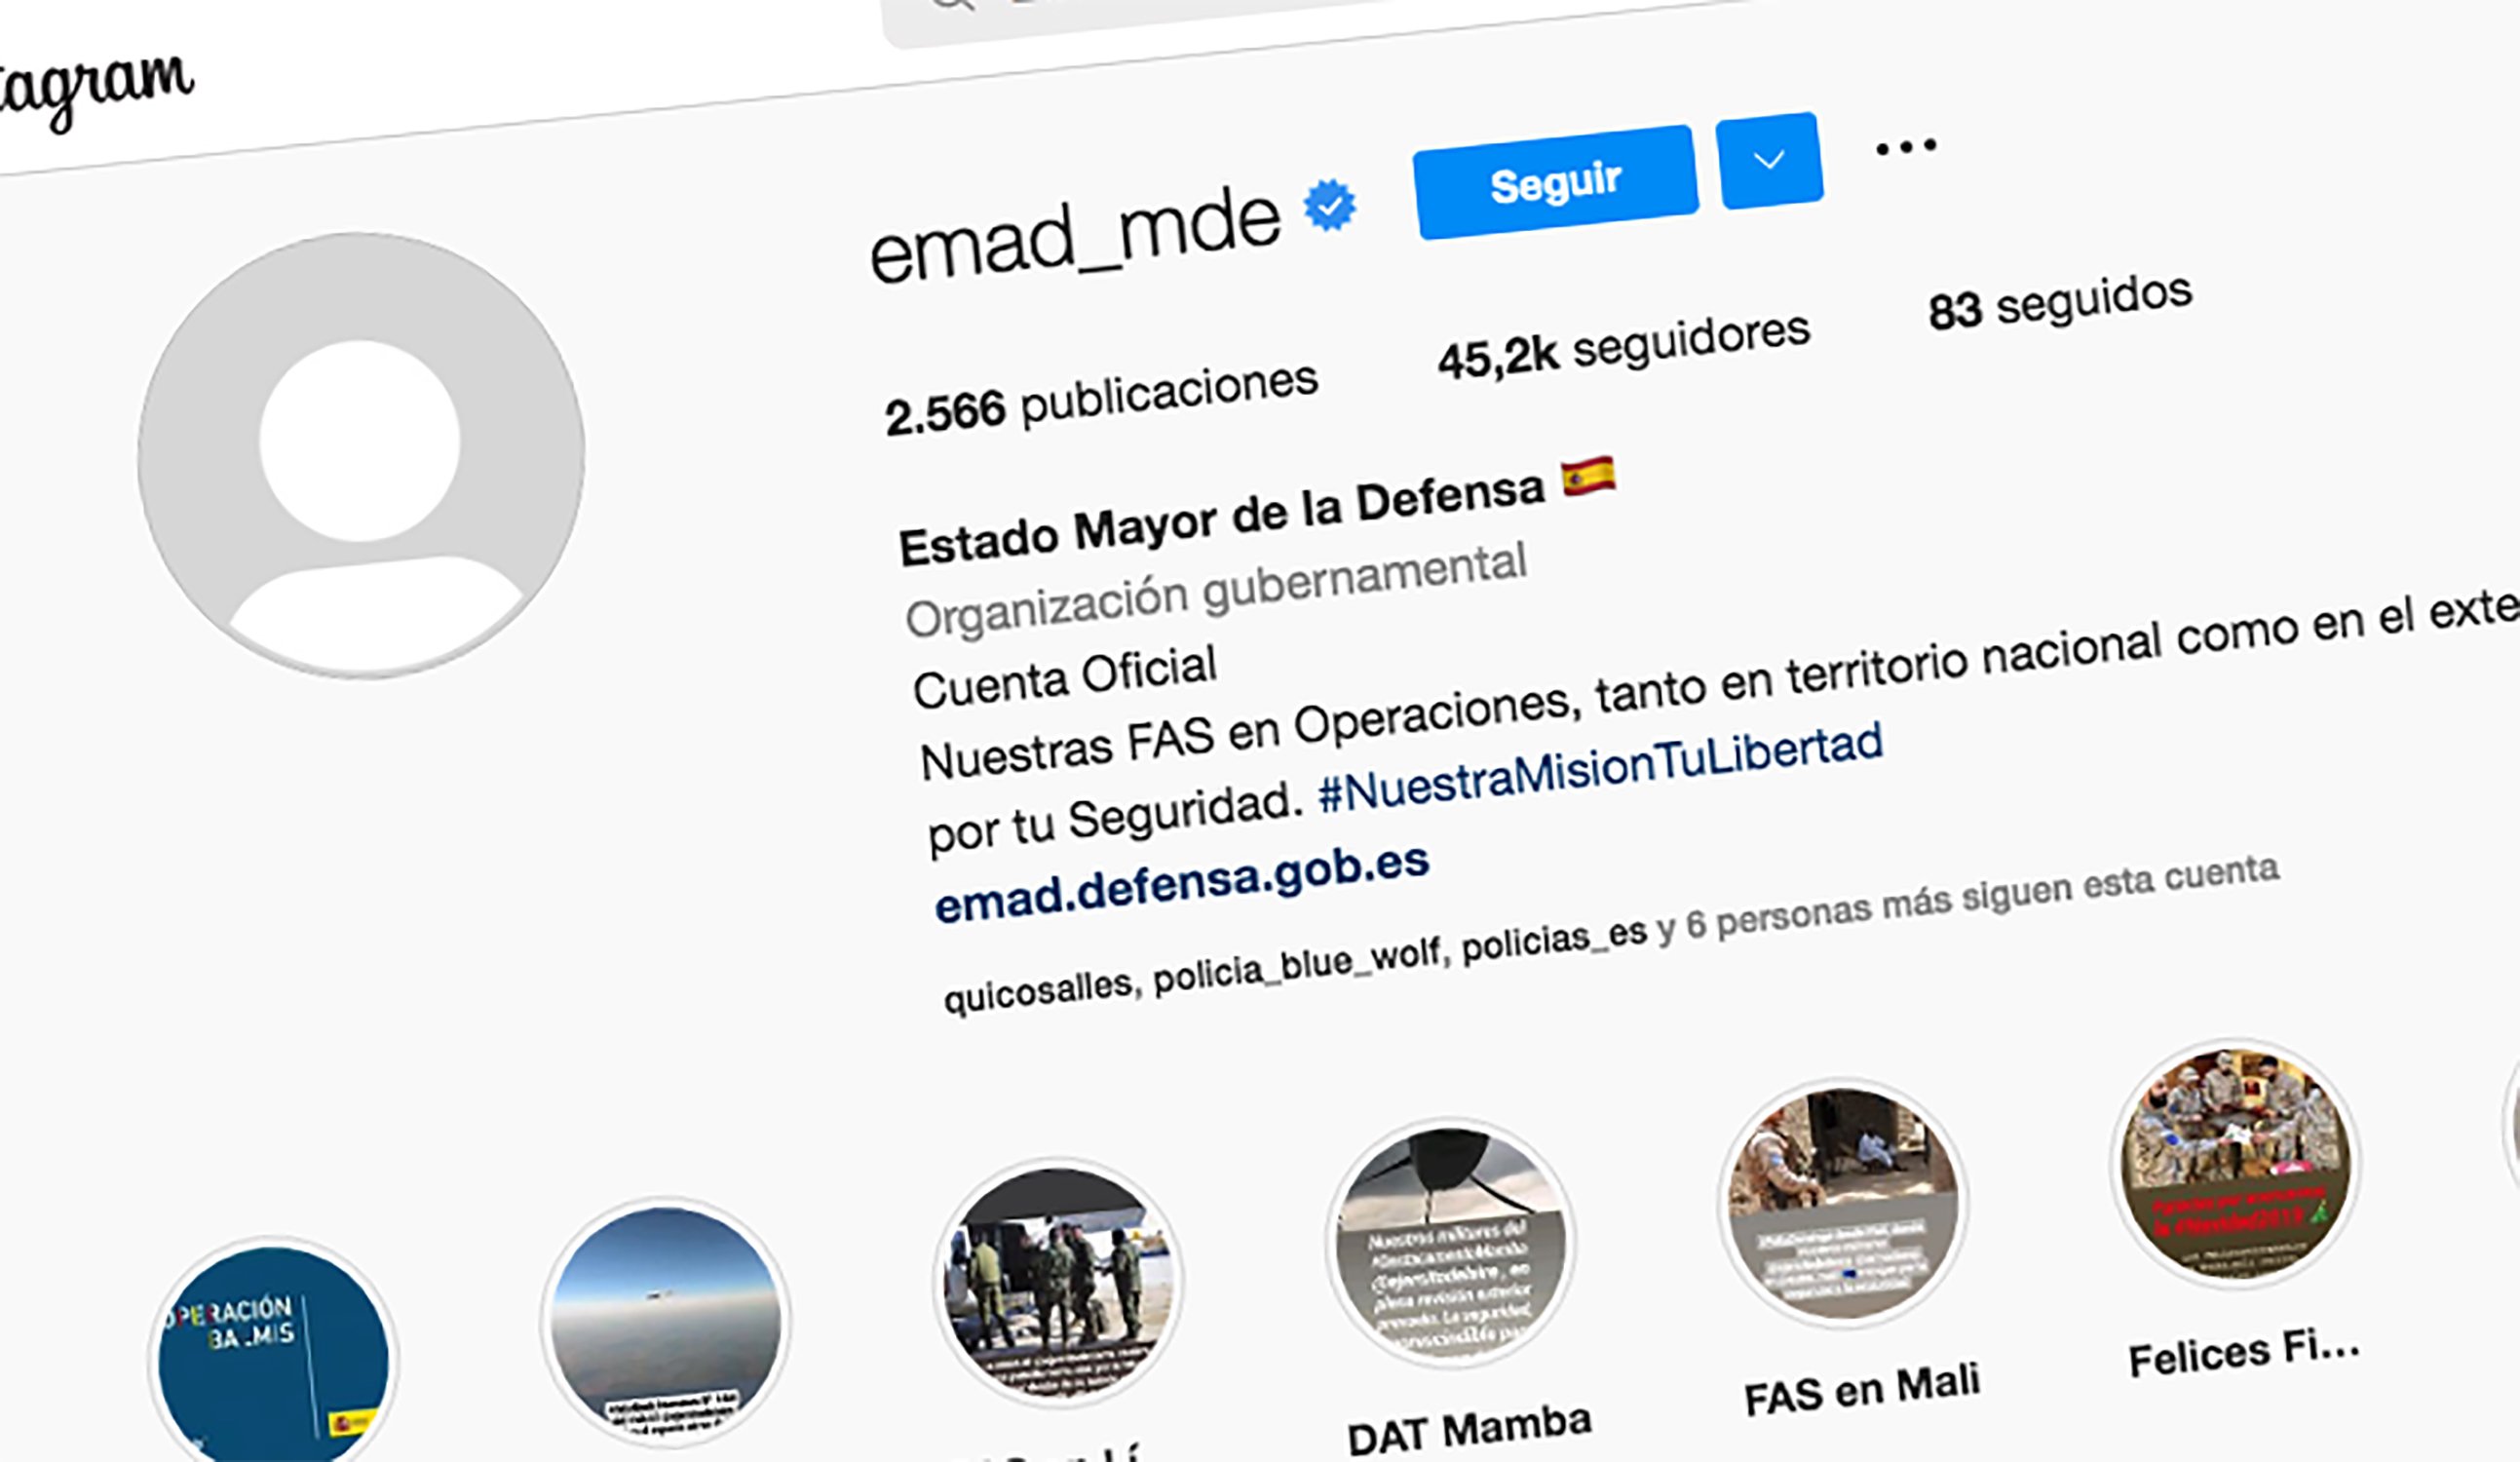 Colen dones despullades al perfil d'Instagram de l'Estat Major de l'exèrcit espanyol